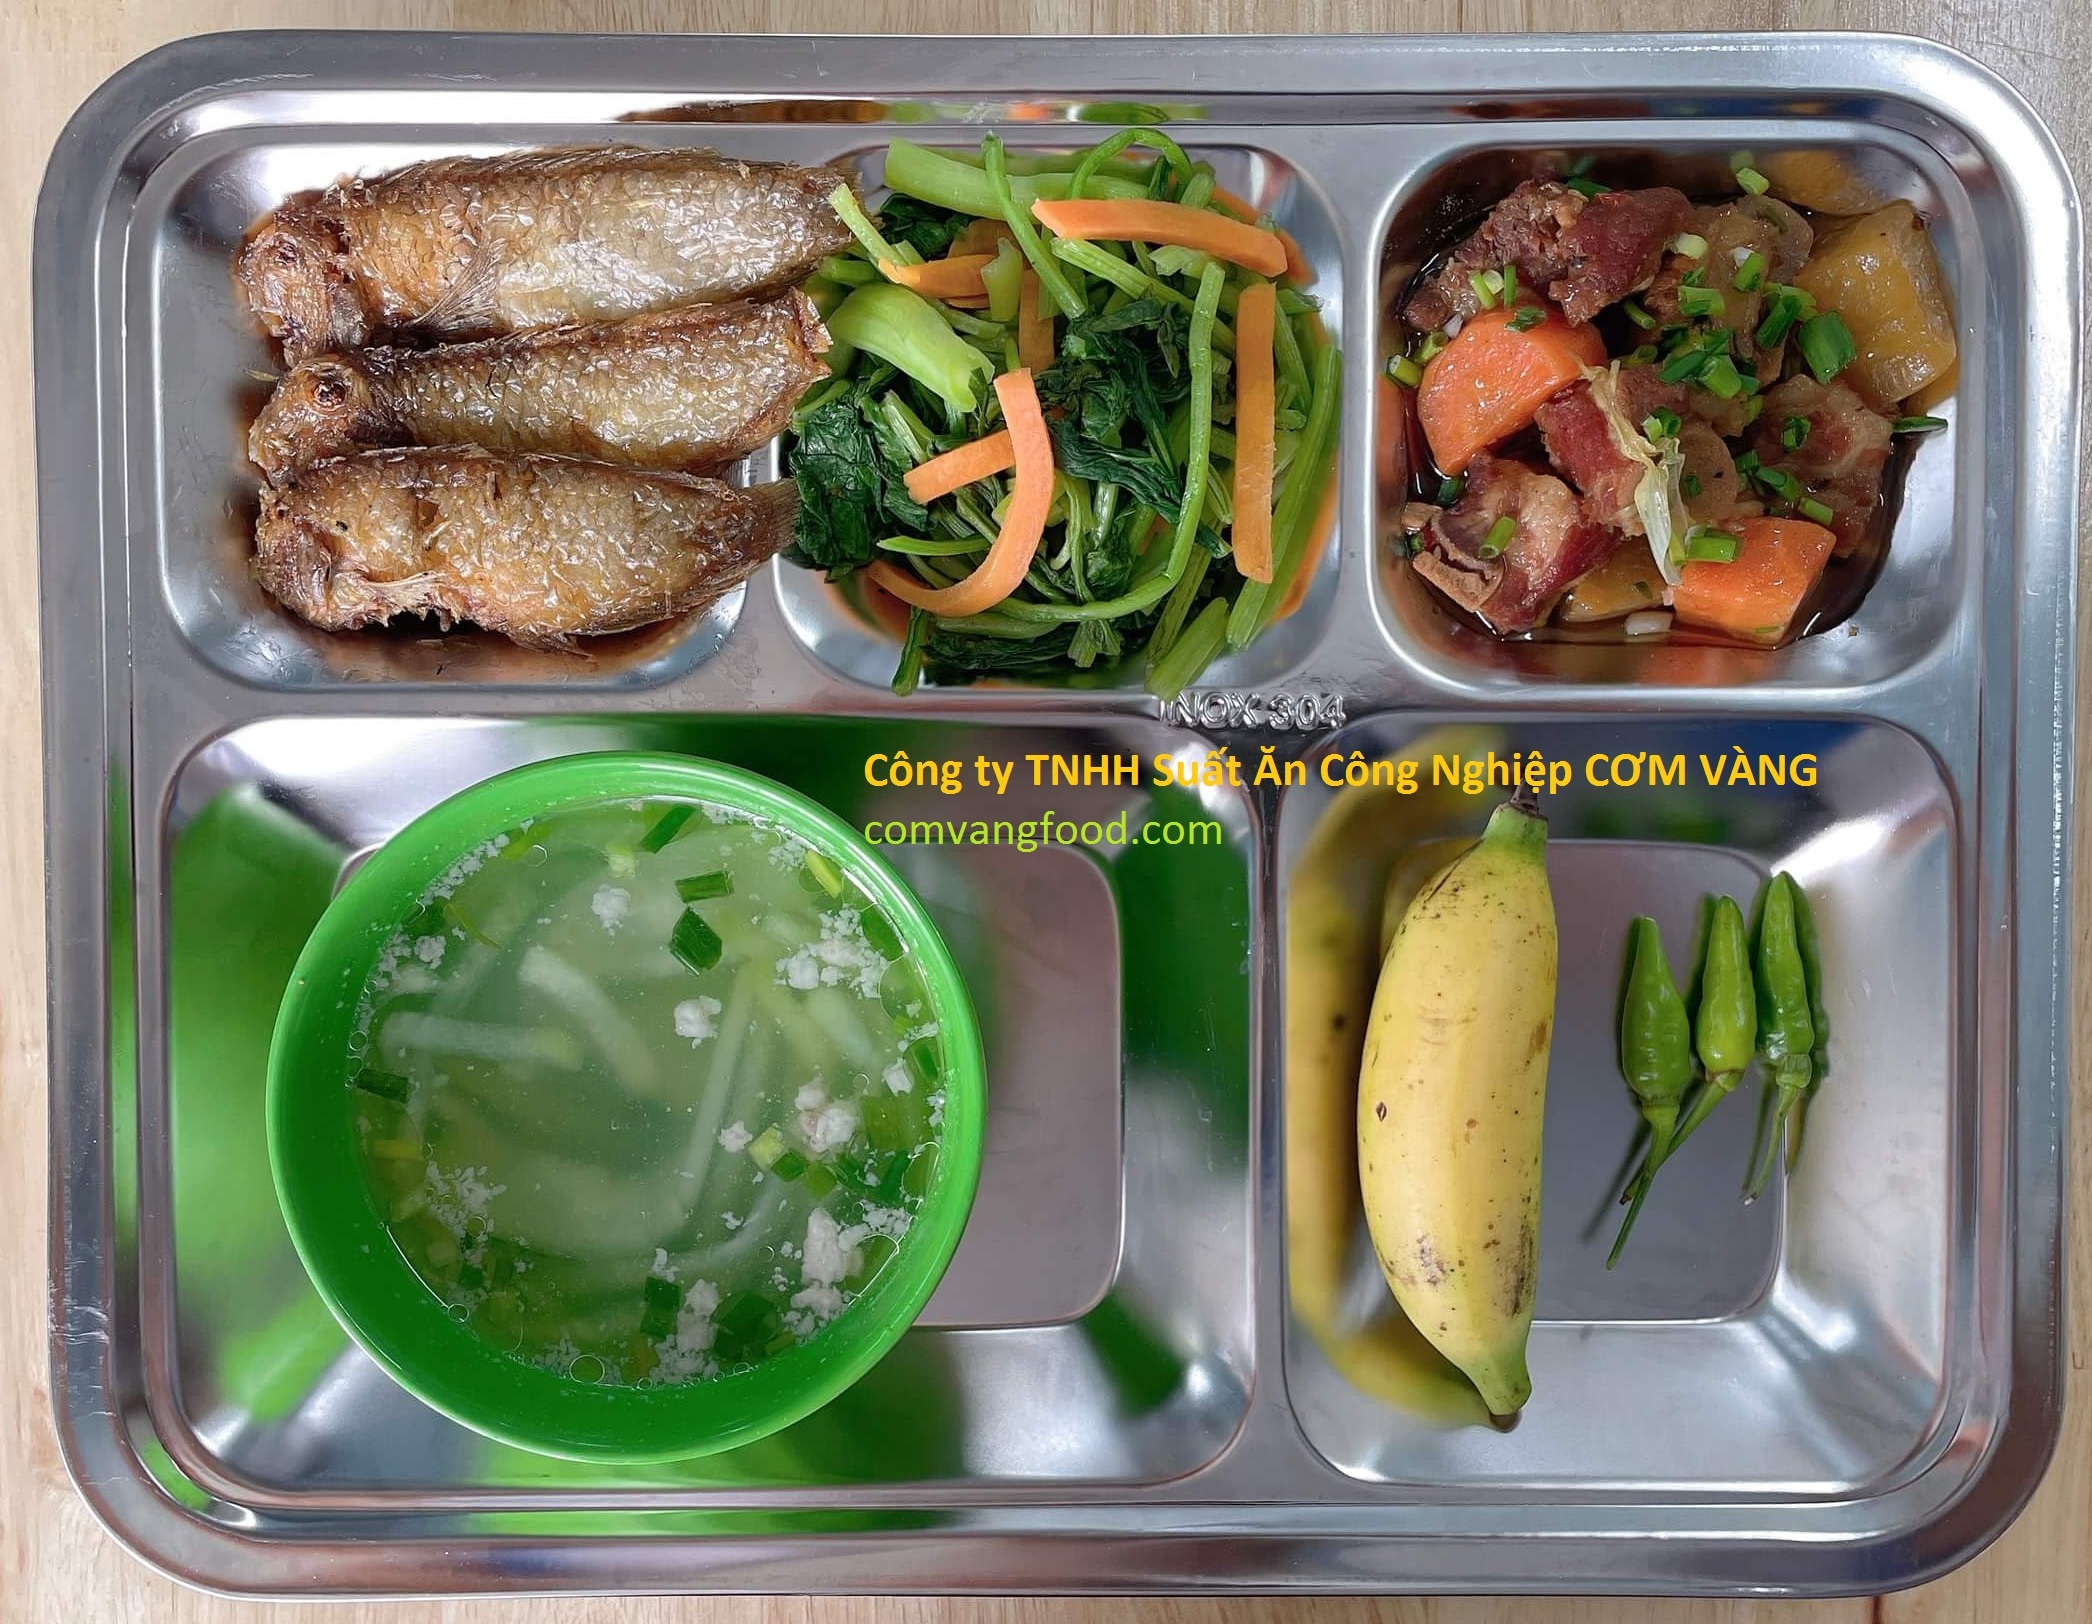 Suất ăn công nghiệp giá 25.000 ở Biên Hòa-Đồng Nai